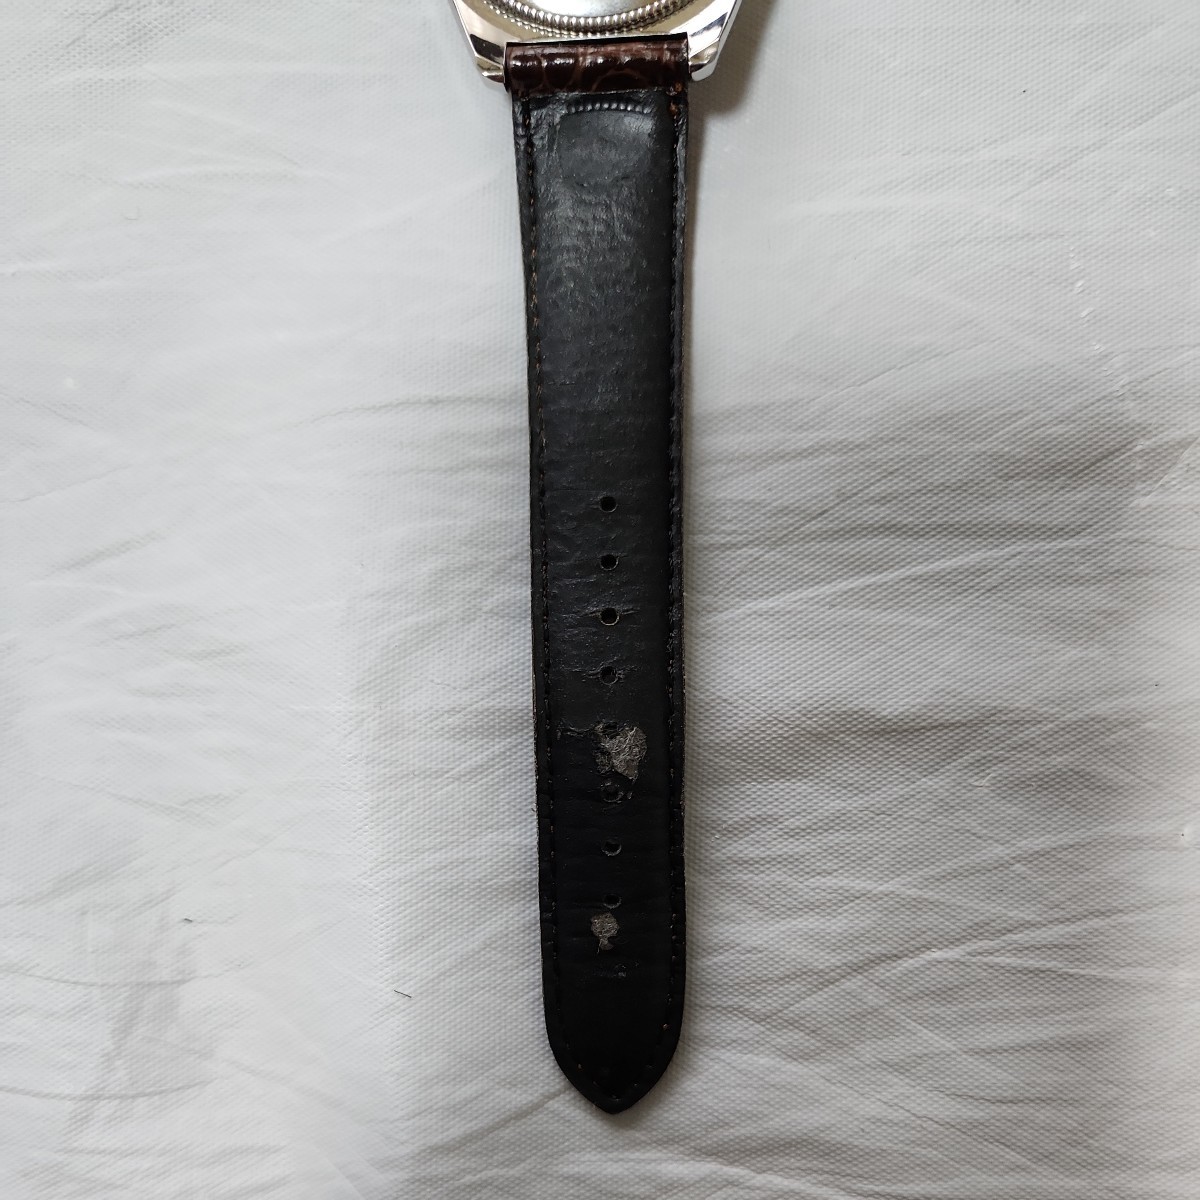 Karl Helmut Karl hell m self-winding watch wristwatch 